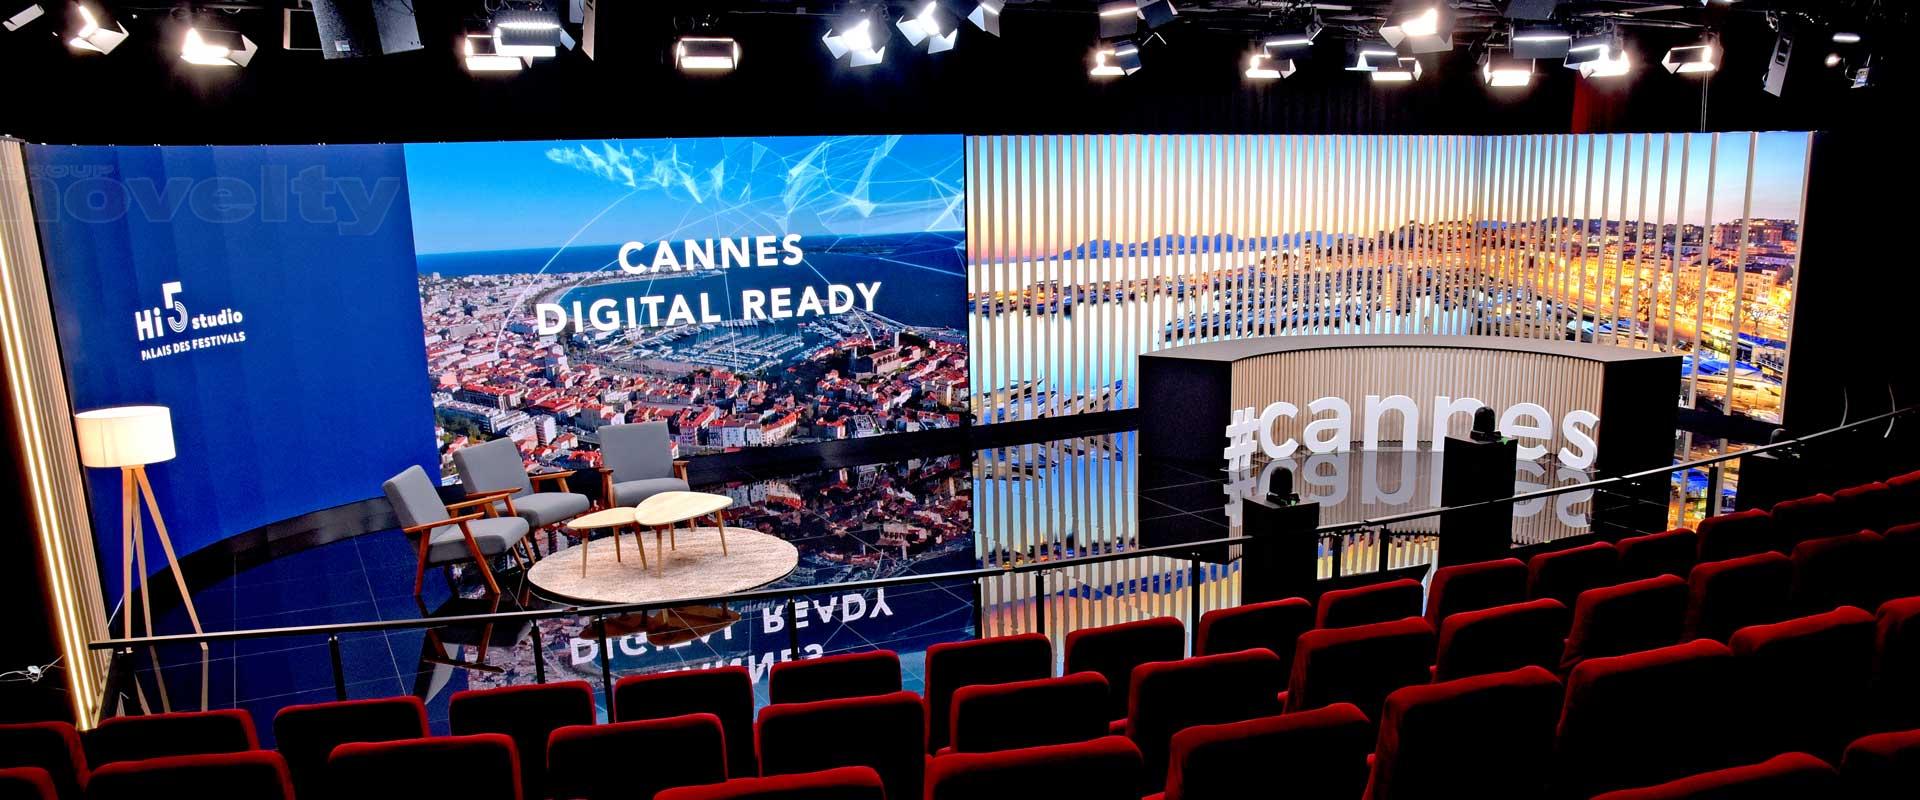 Visuel Novelty Azur partenaire du Palais des Festivals de Cannes pour le Hi5 studio